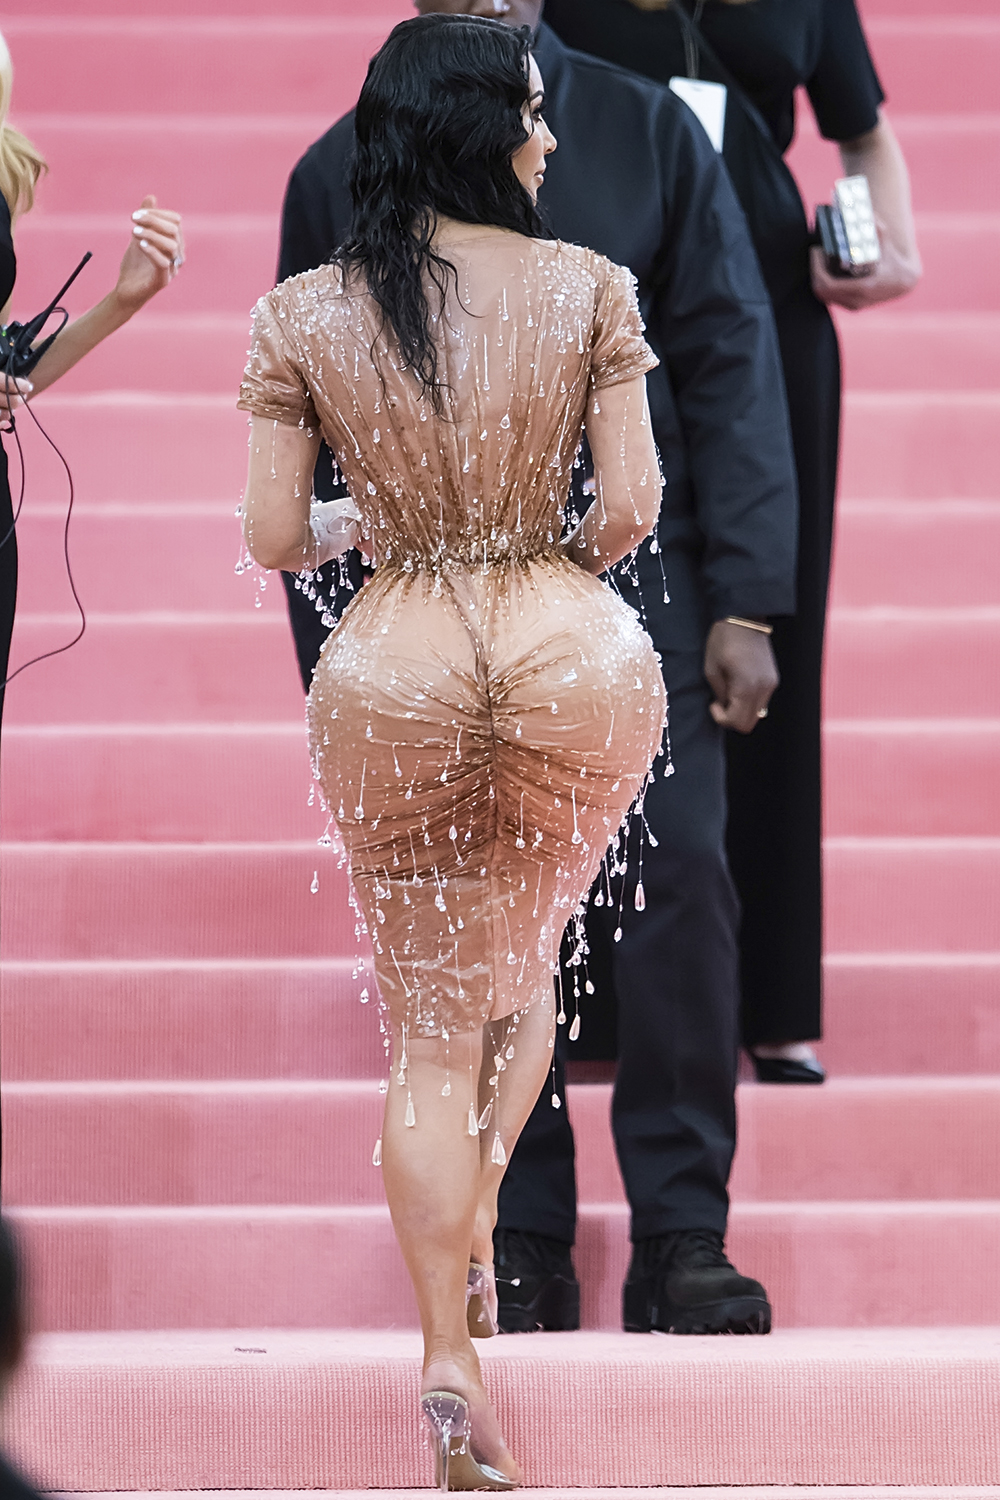 MARKETING - Kim Kardashian: símbolo do “bumbum promocional”